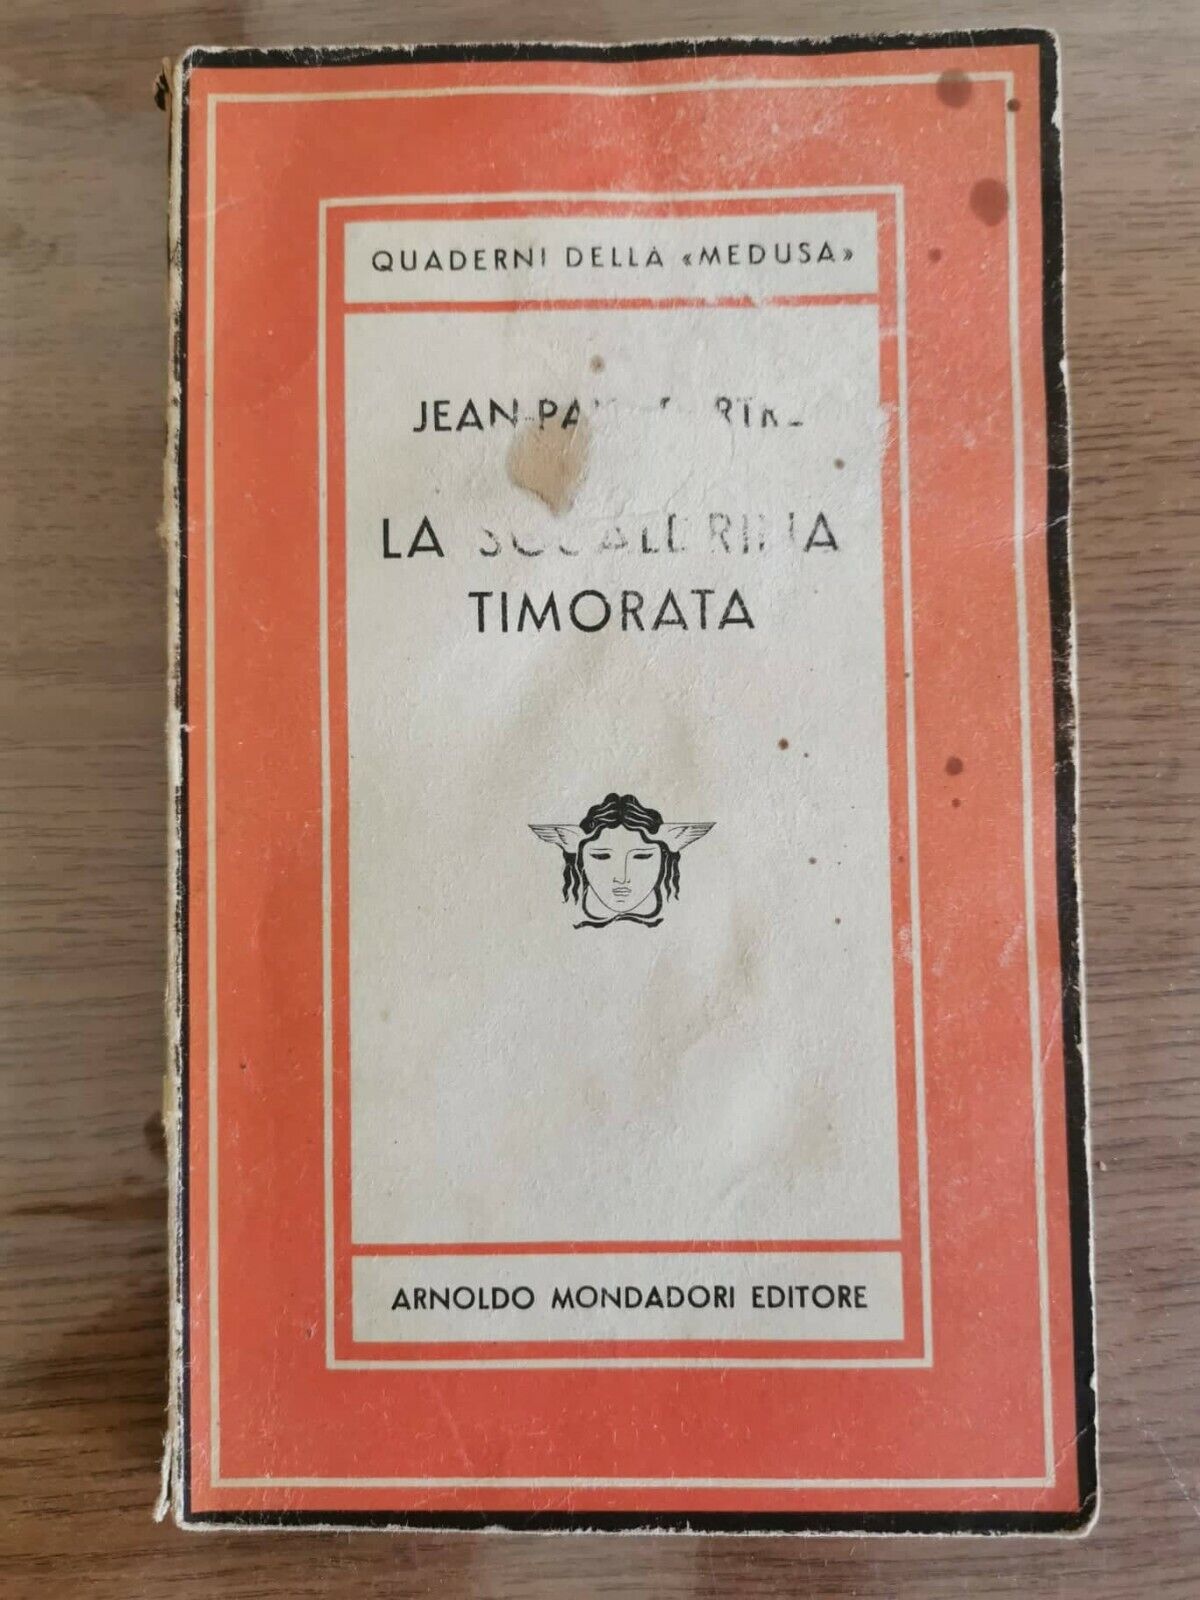 La sgualdrina timorata - J.P. Sartre - Mondadori - 1947 - AR